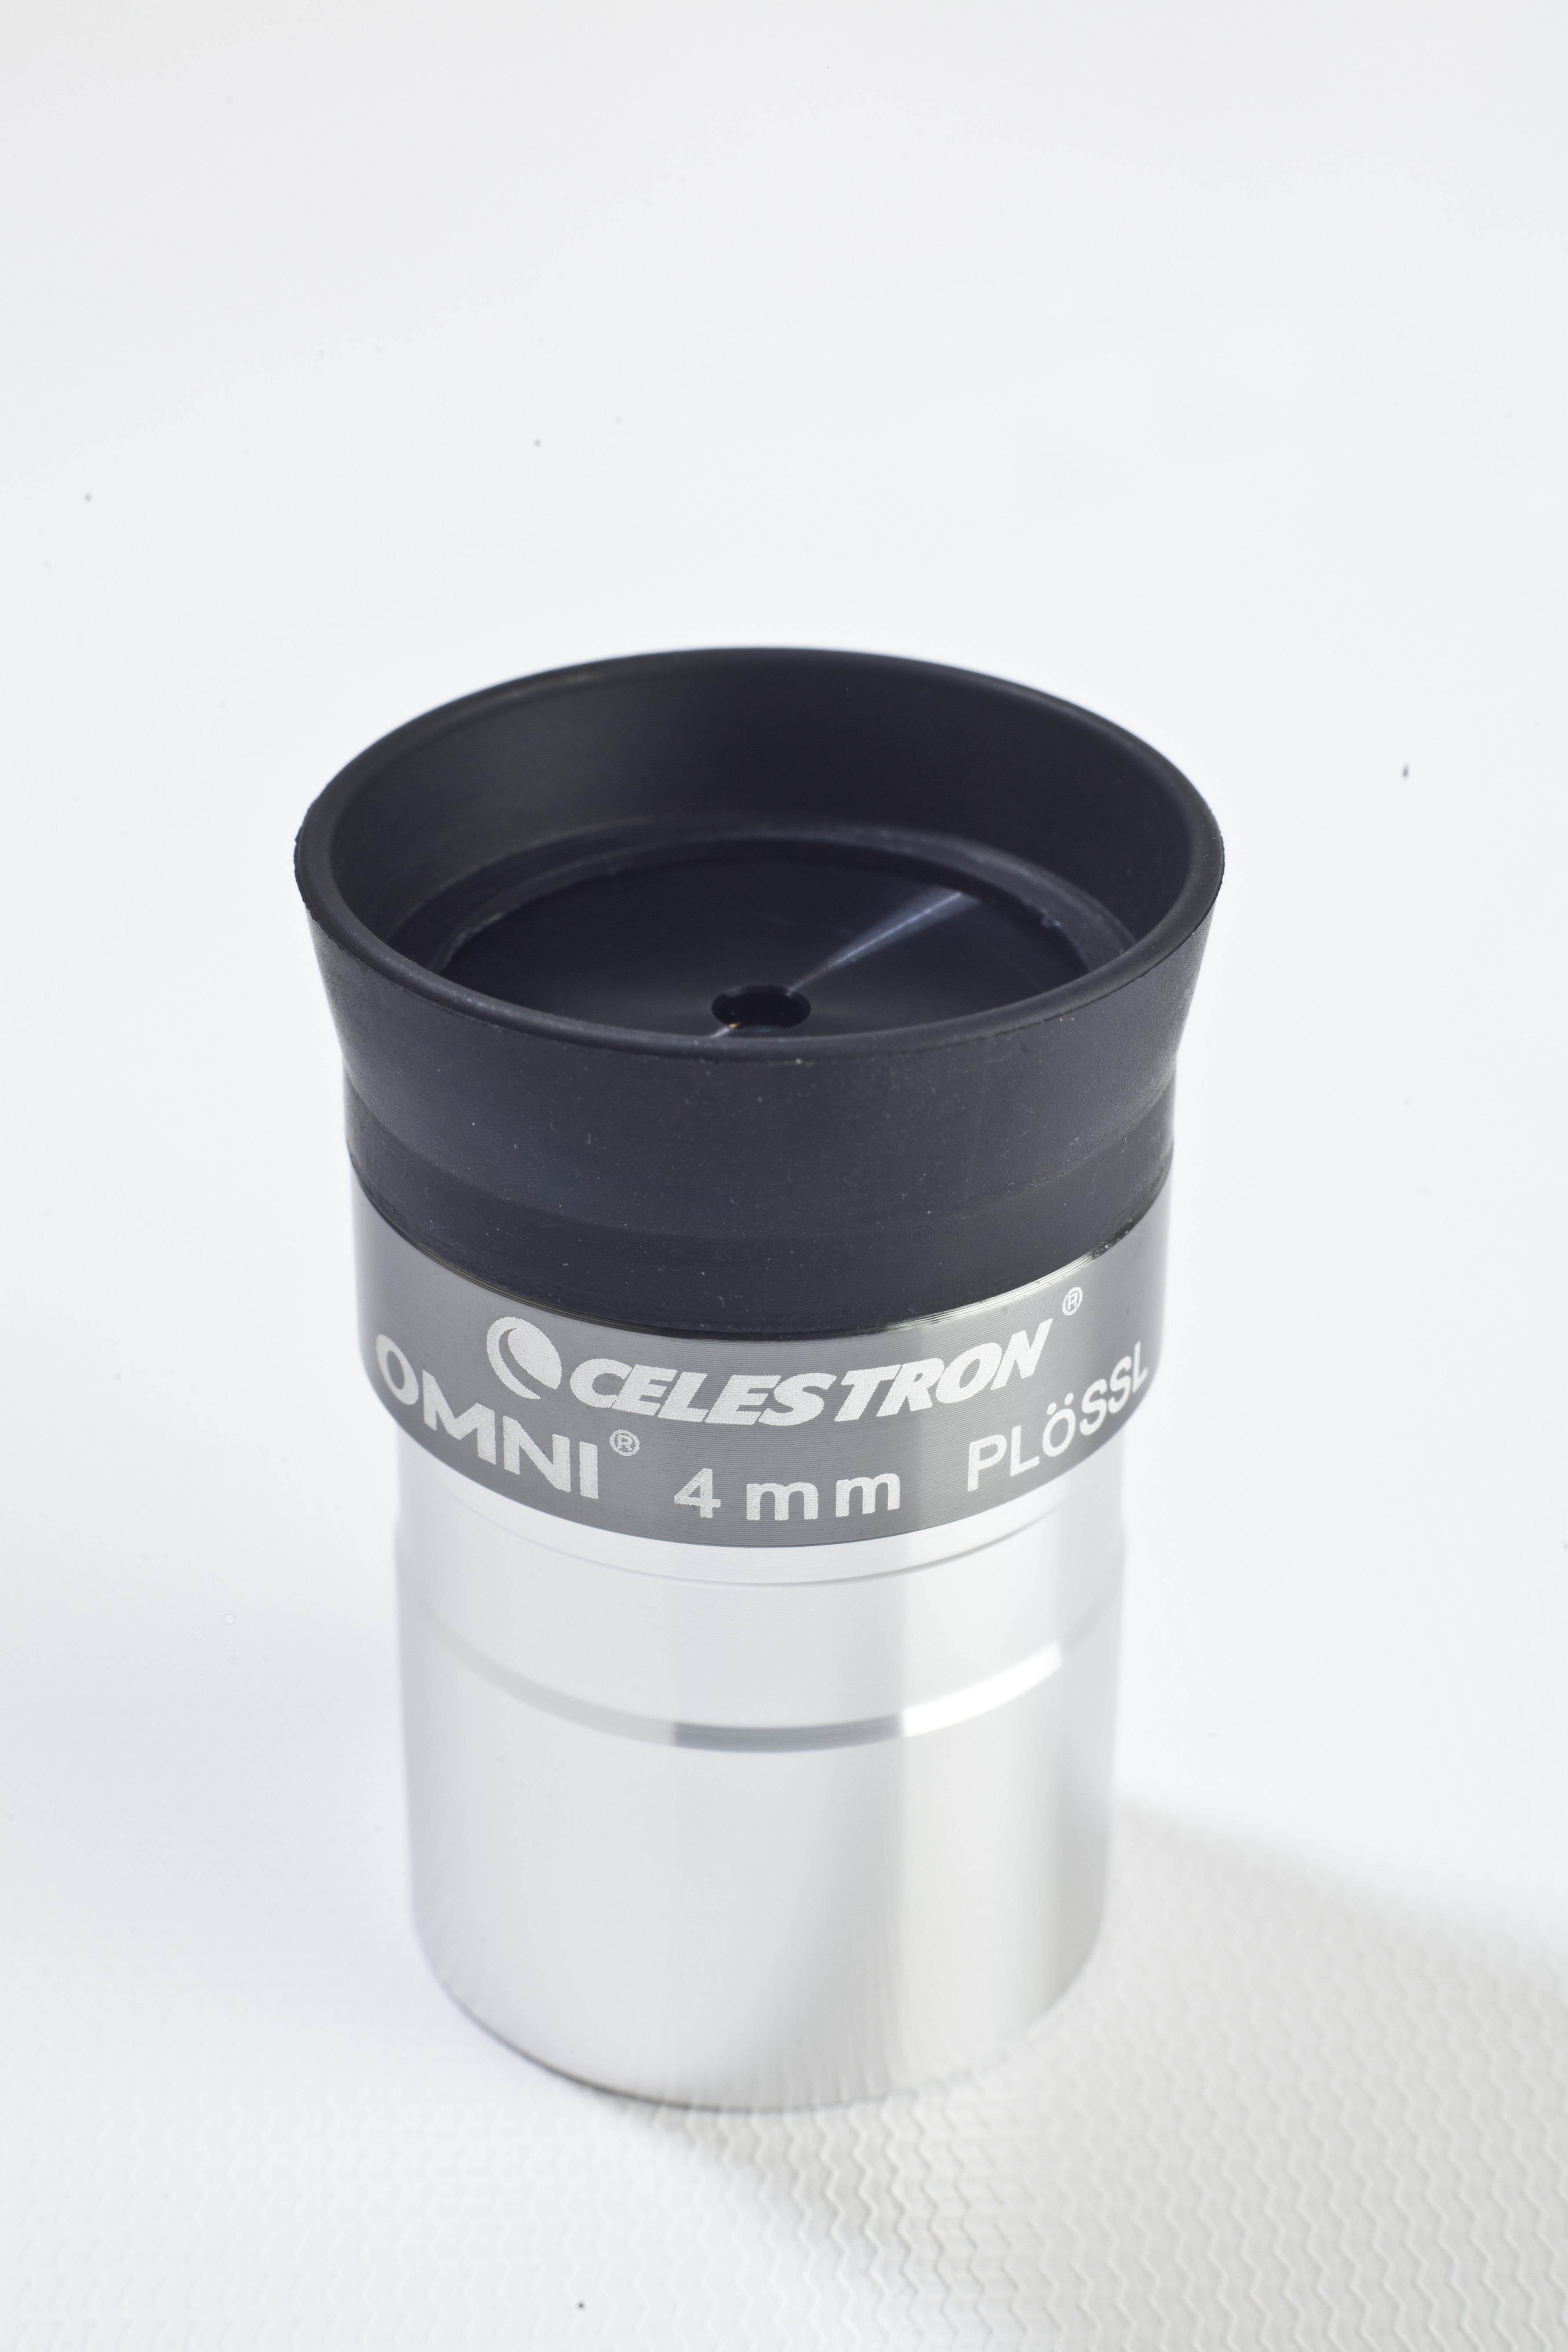 Celestron Omni Eyepiece 1.25 Inch 4mm